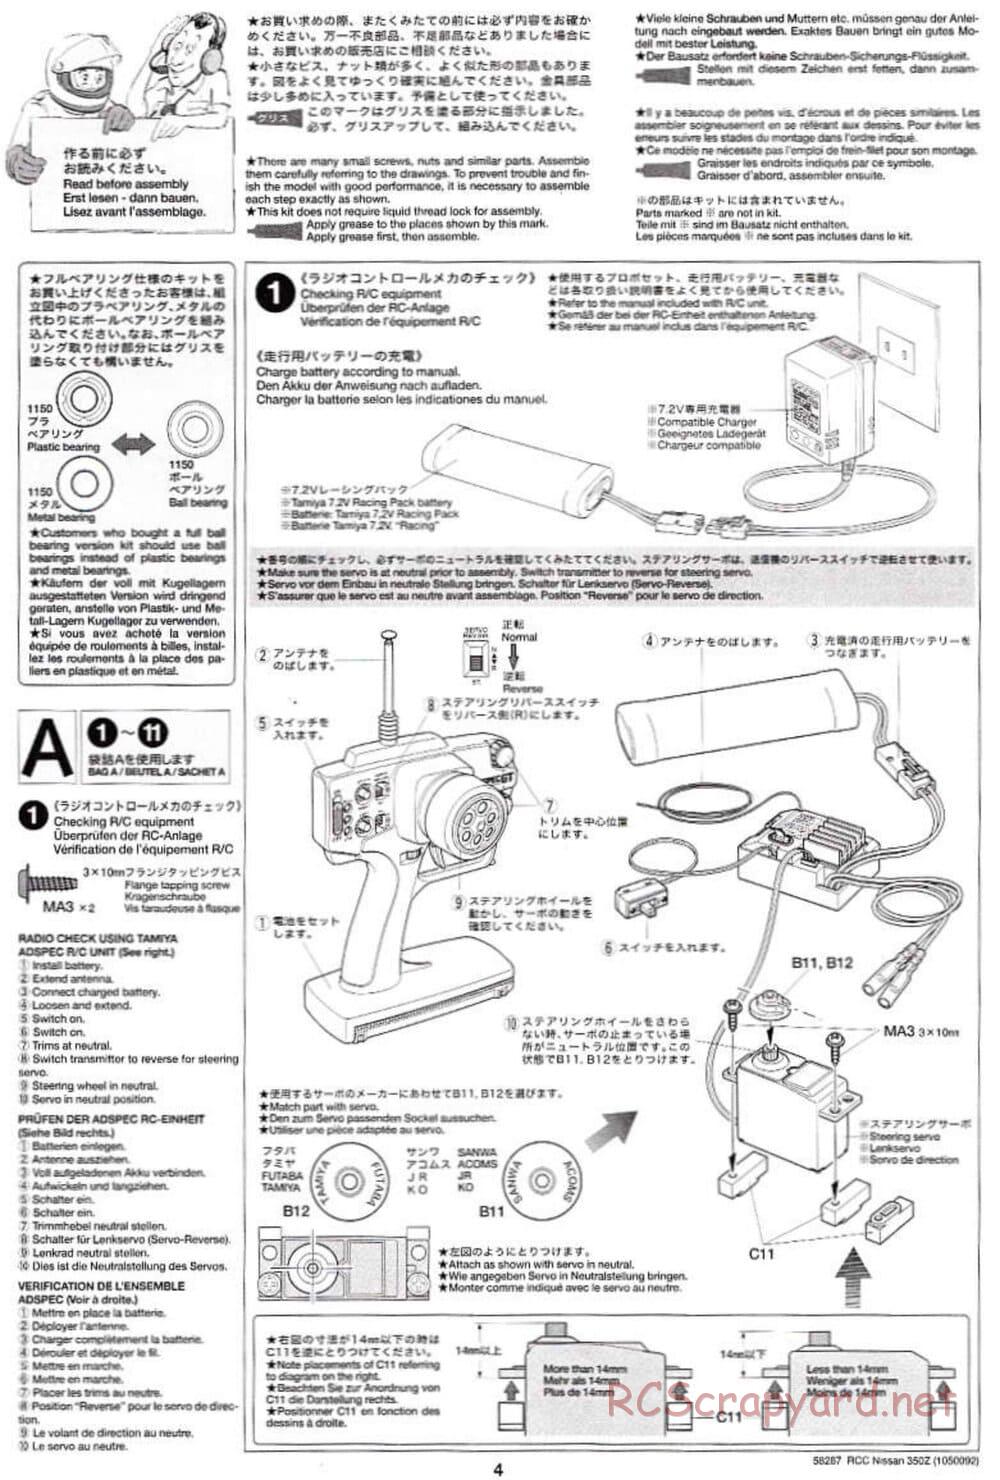 Tamiya - Nissan 350Z - TL-01 Chassis - Manual - Page 4